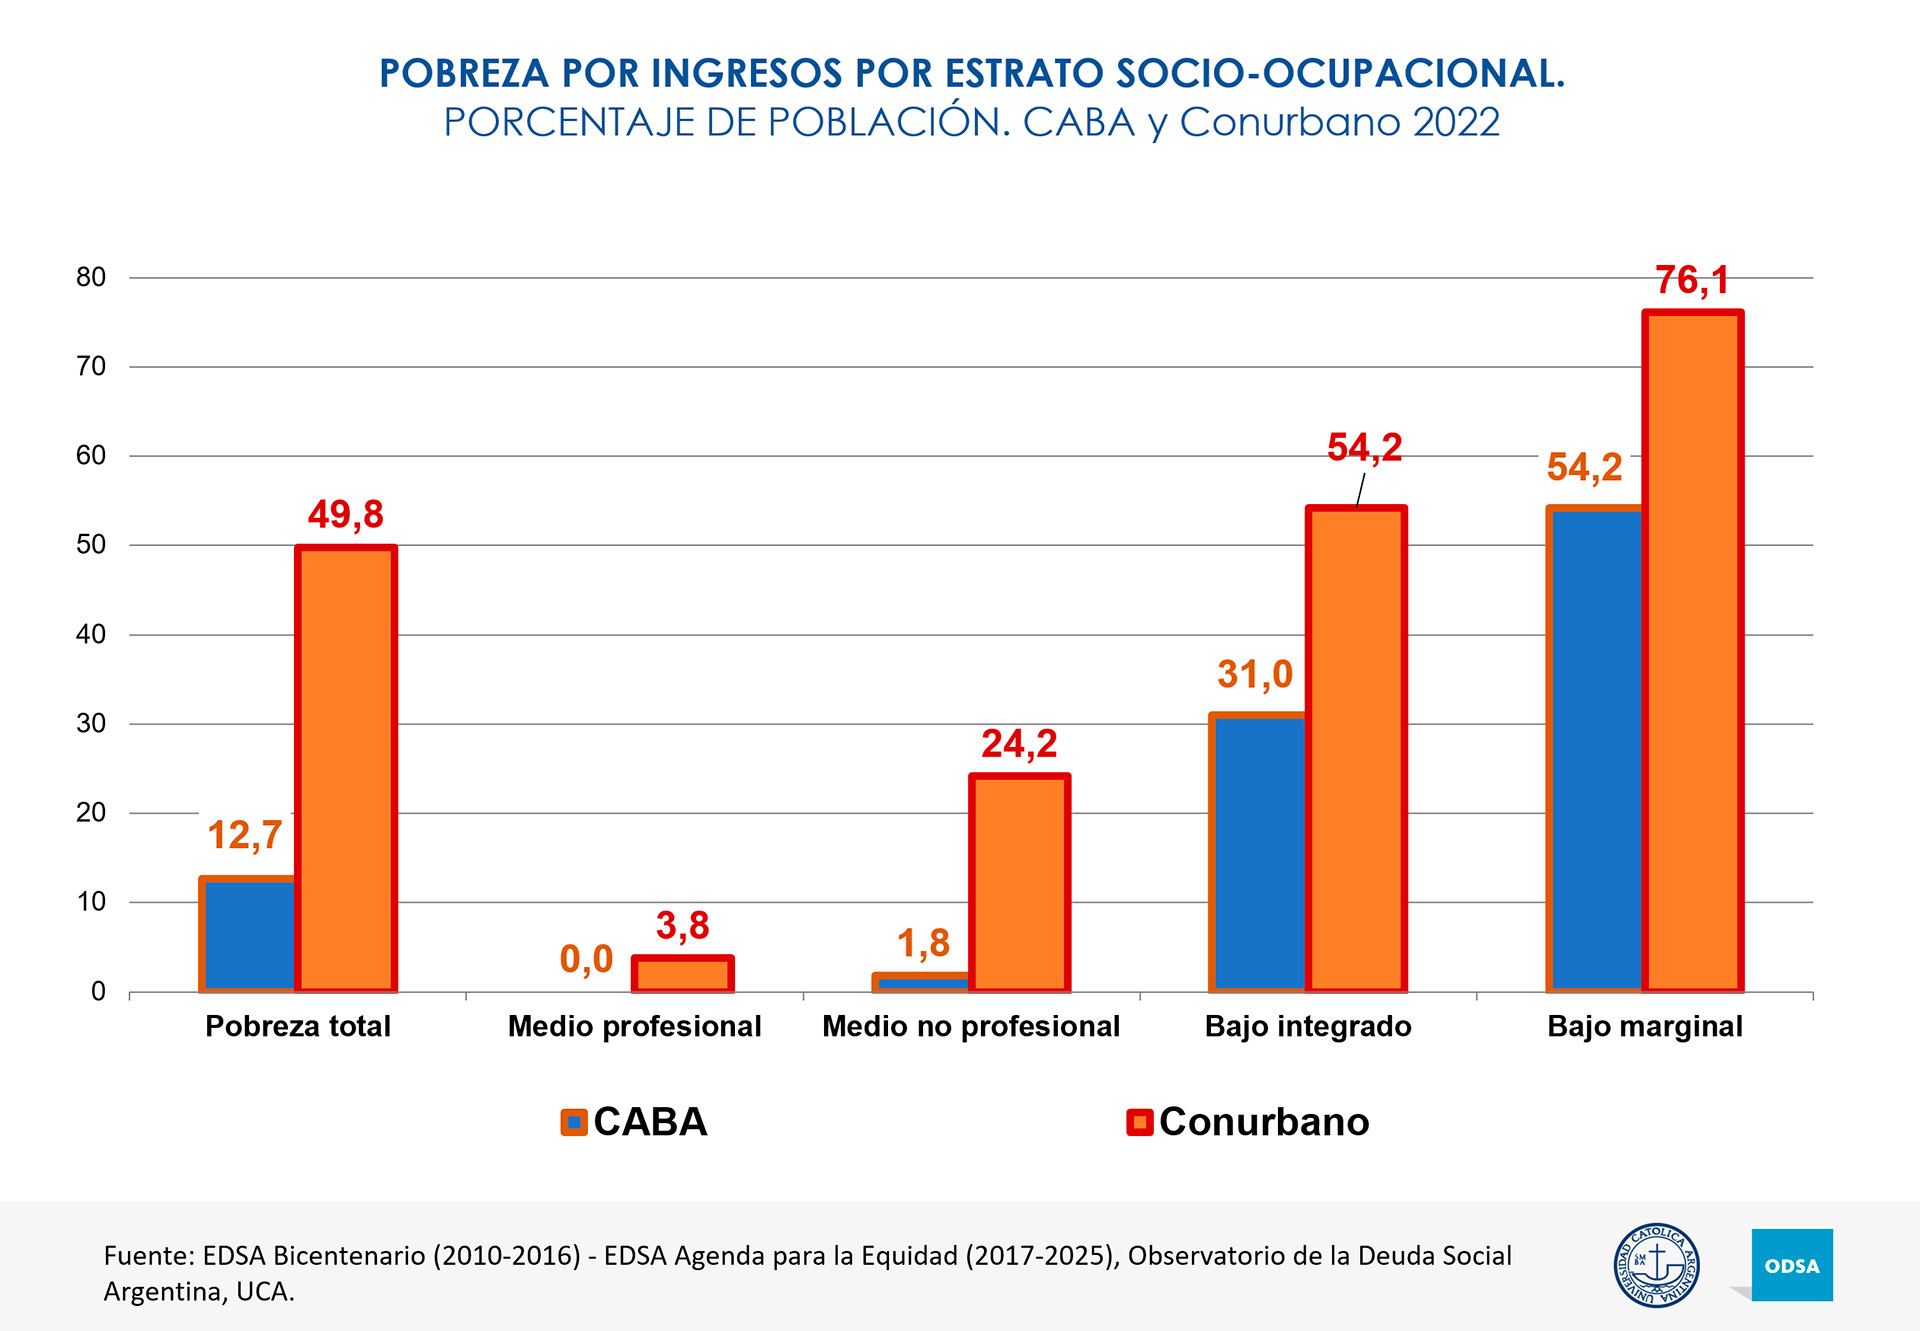 Pobreza por estratos socioeconómicos
Informe de la UCA de pobreza